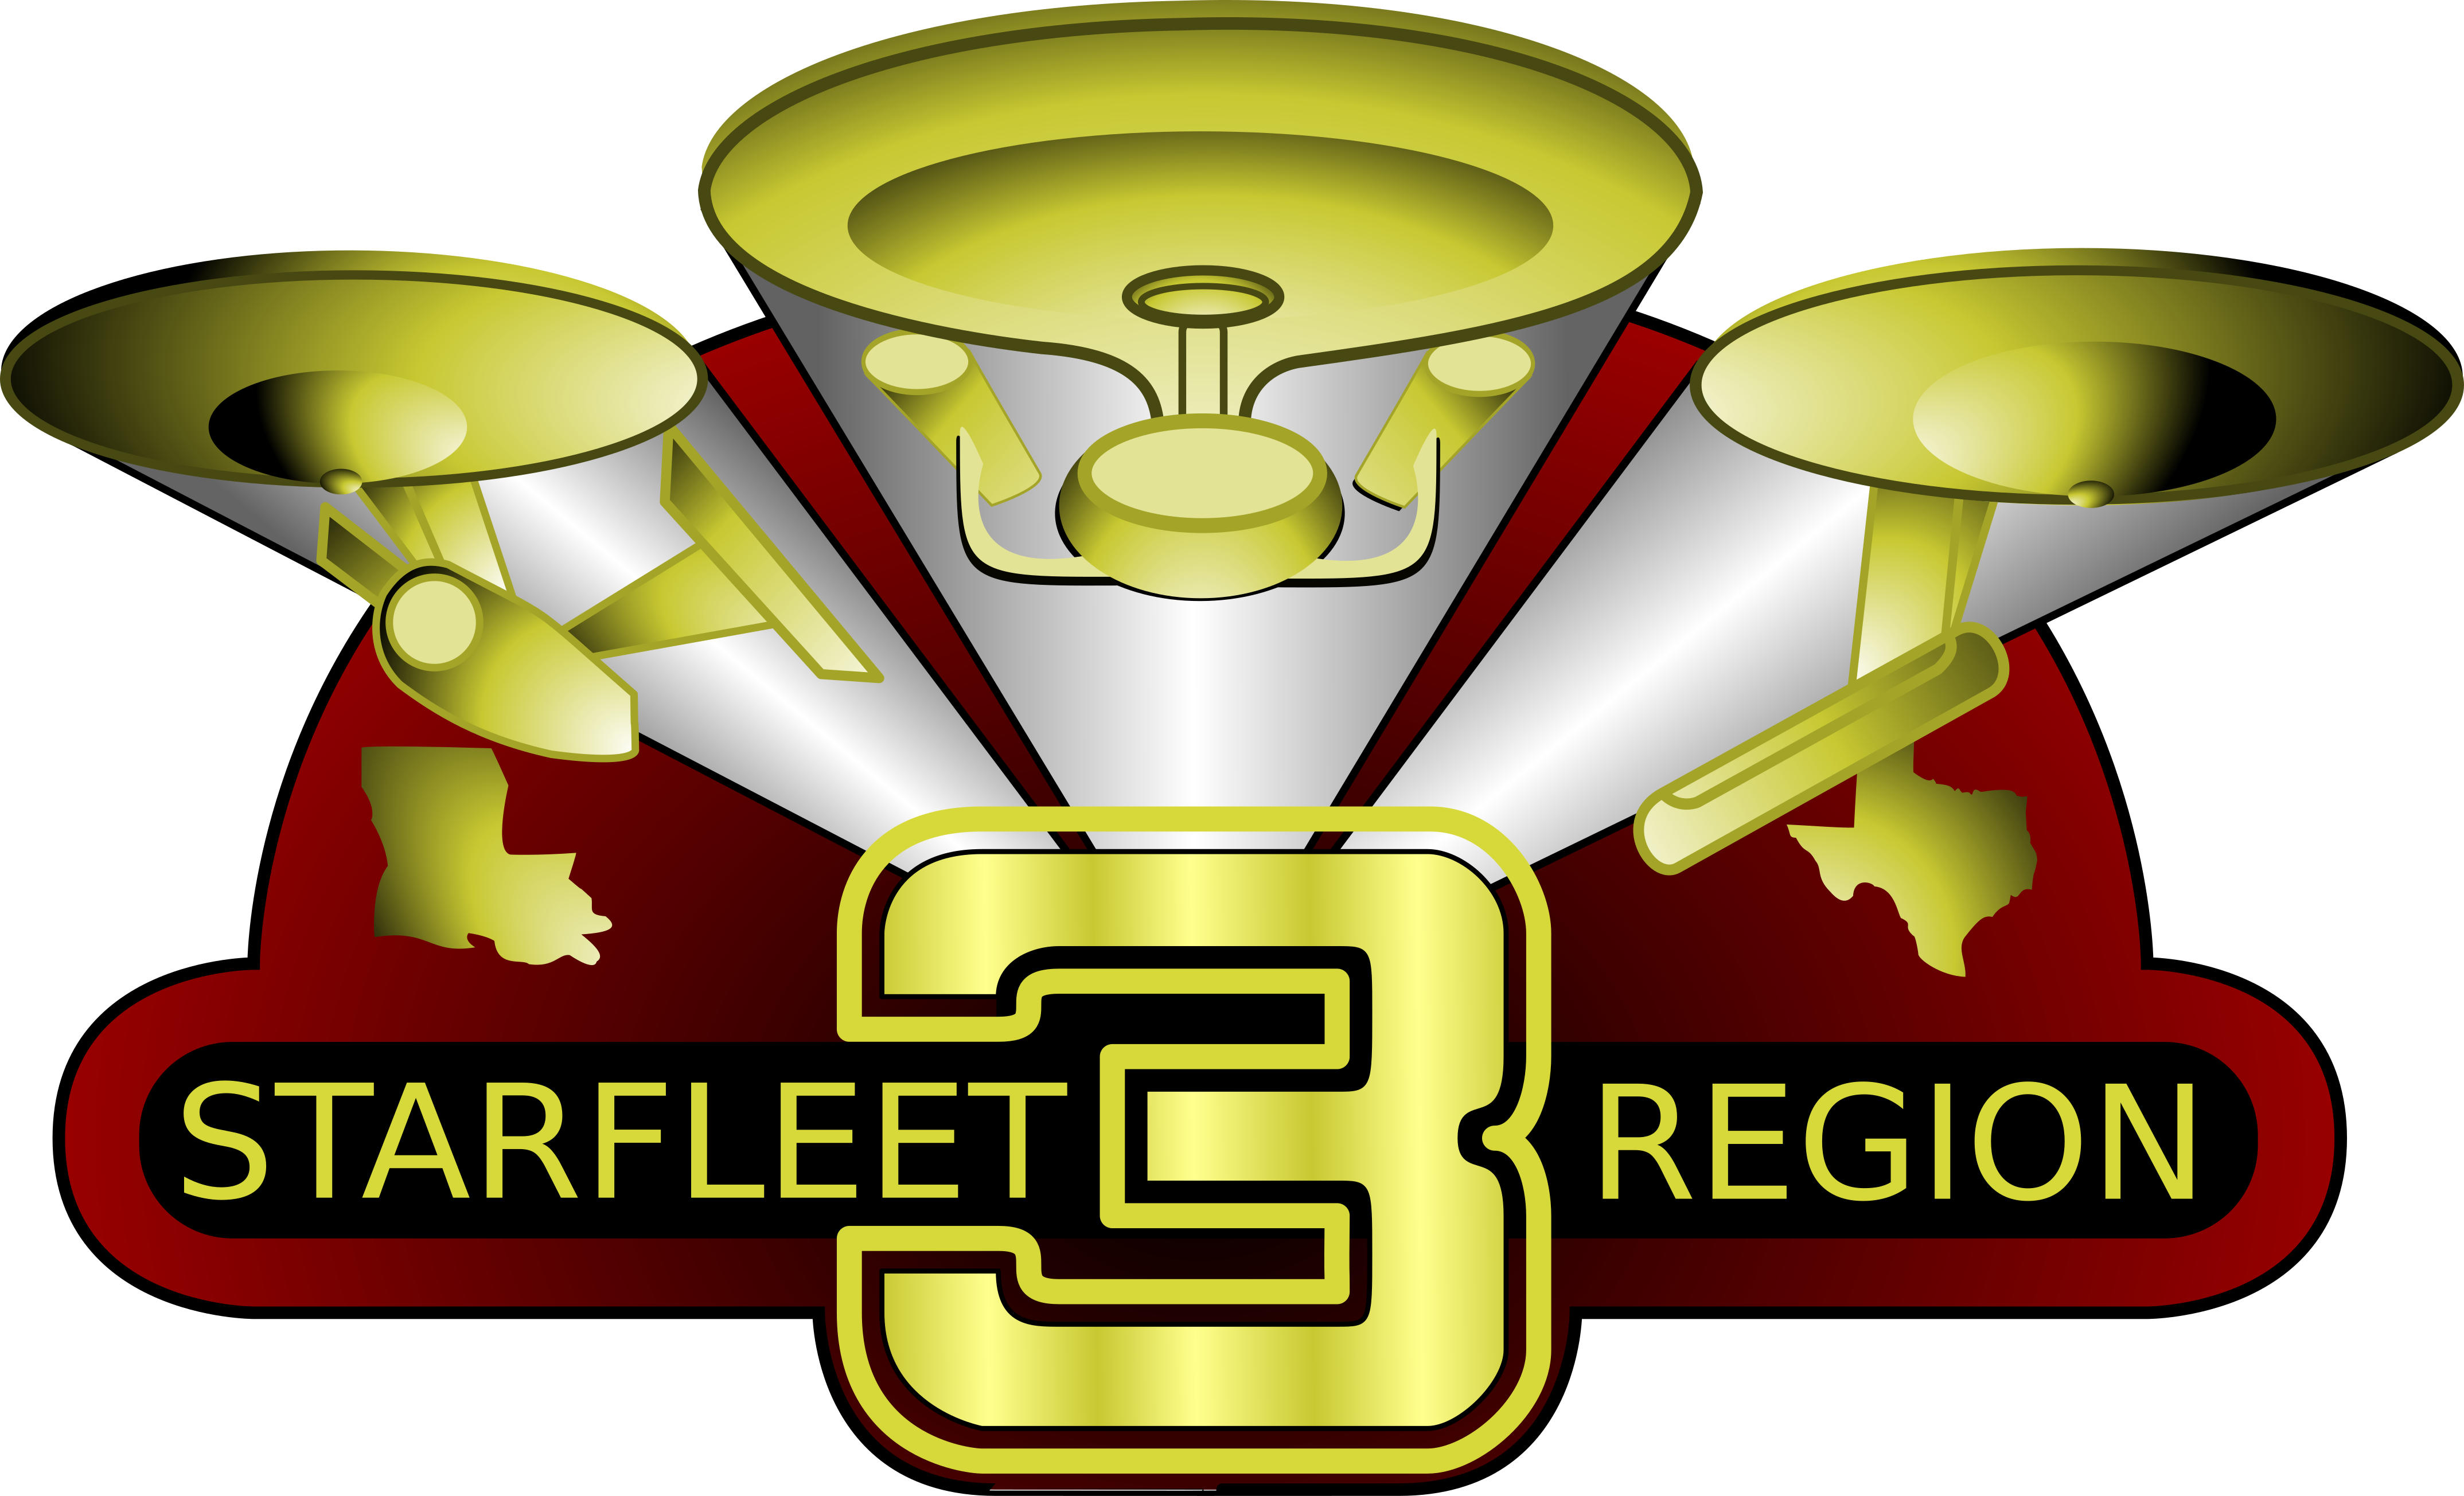 Starfleet Region - Ipod Touch 4.png Mug (4296x2609)